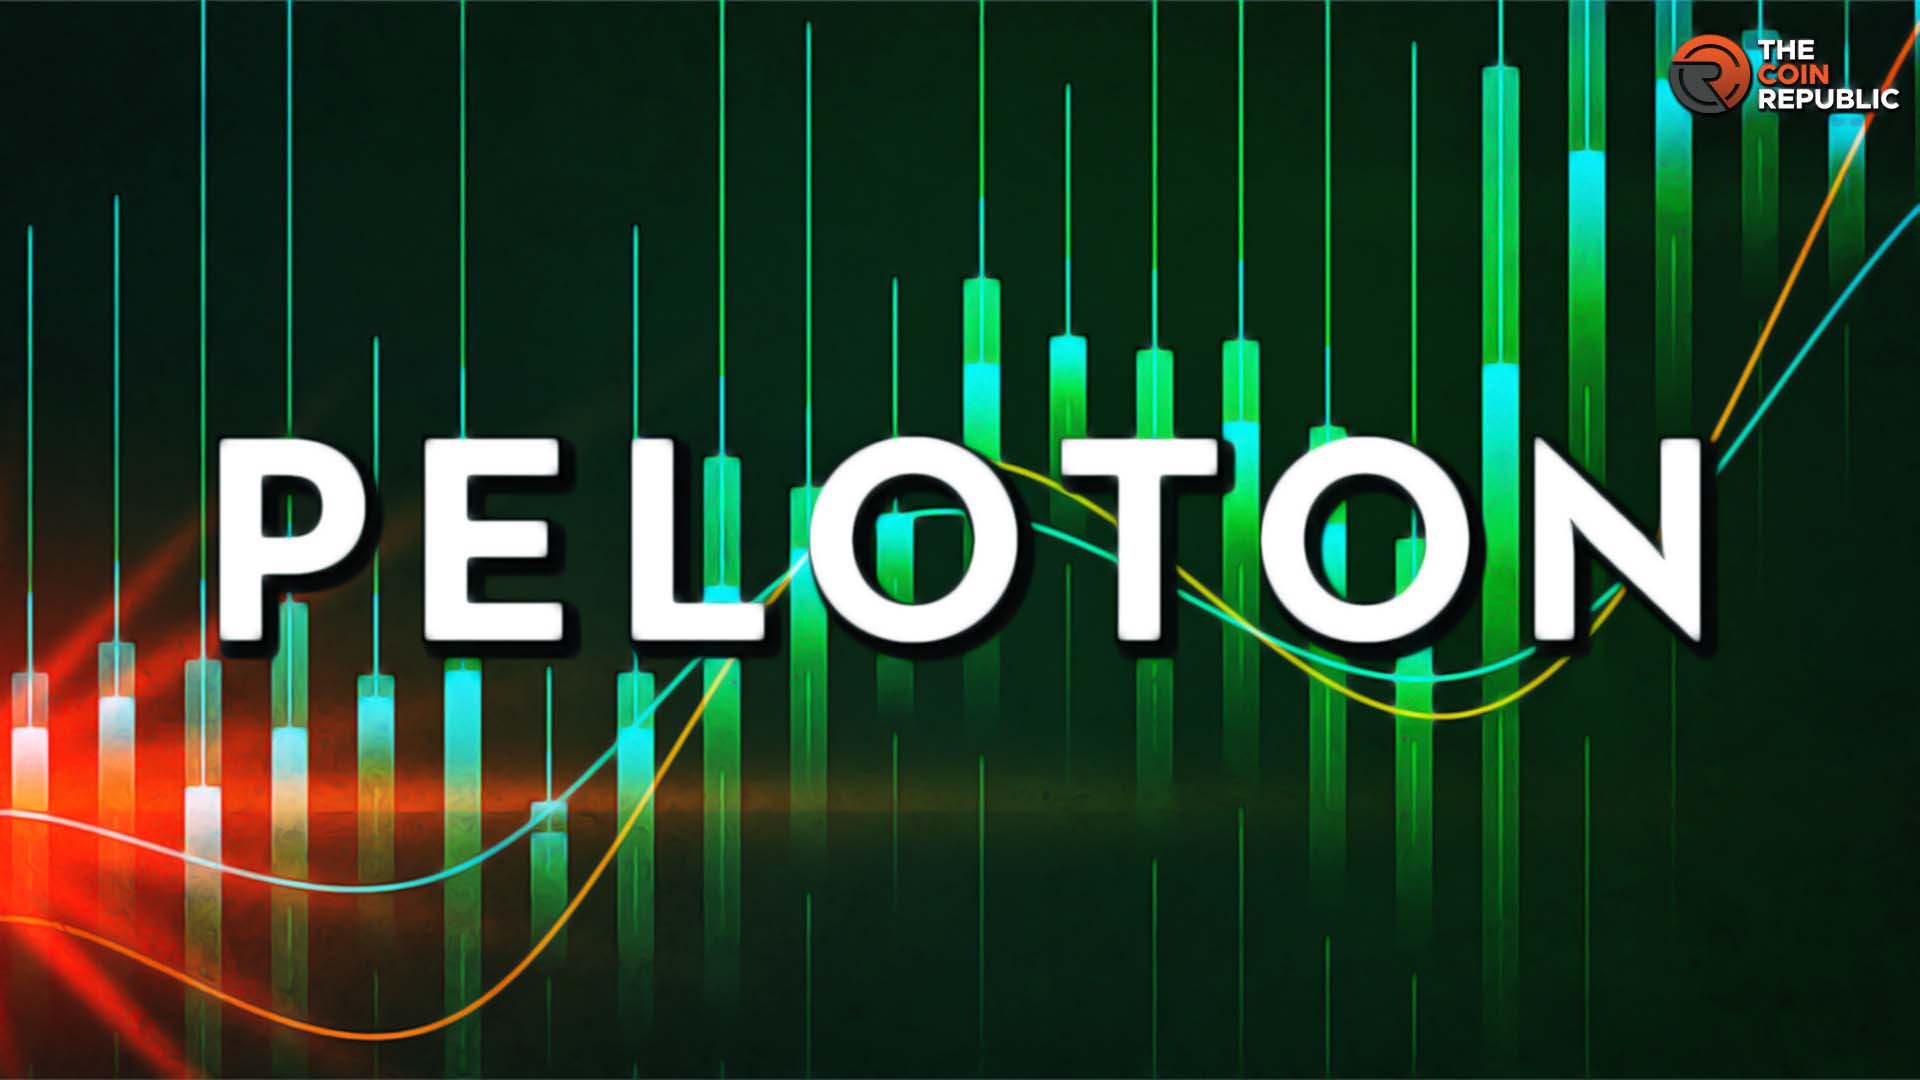 PTON Stock: Will Peloton Stock Price Break down $5 or Recover?